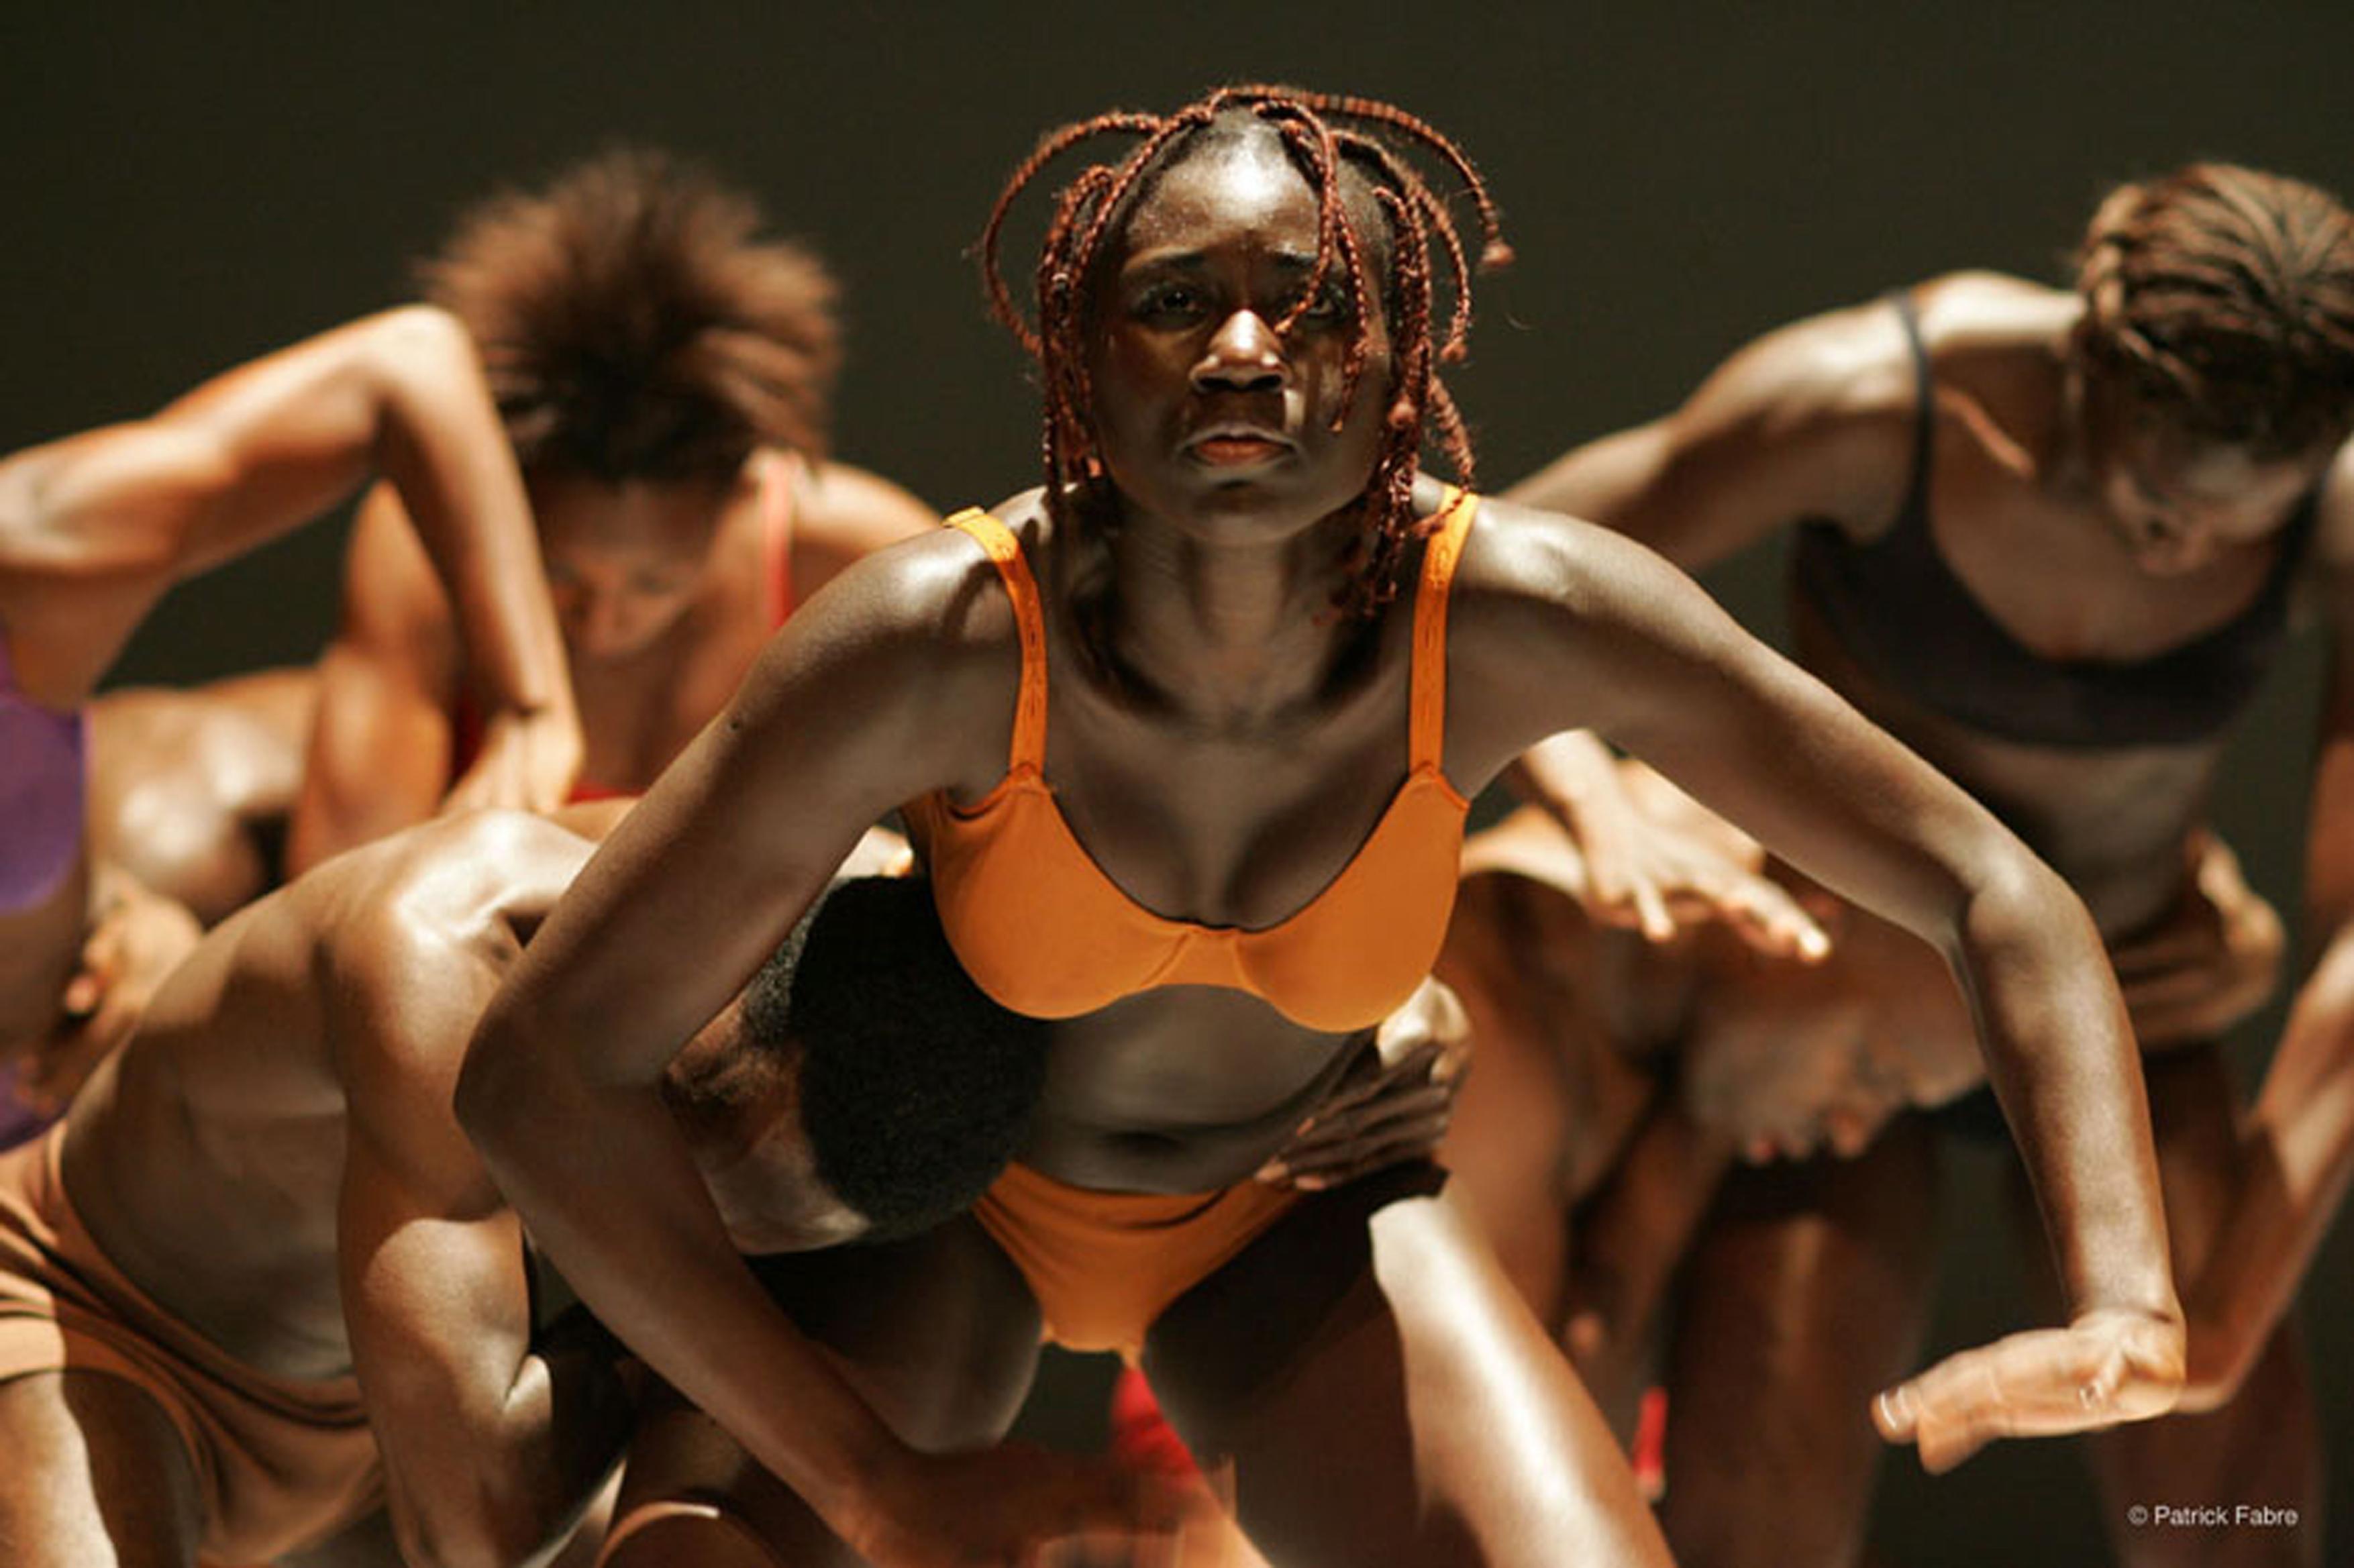 MCA Artistas de cerca: El cuerpo y la danza moderna | Museo de Arte Contemporáneo de Chicago